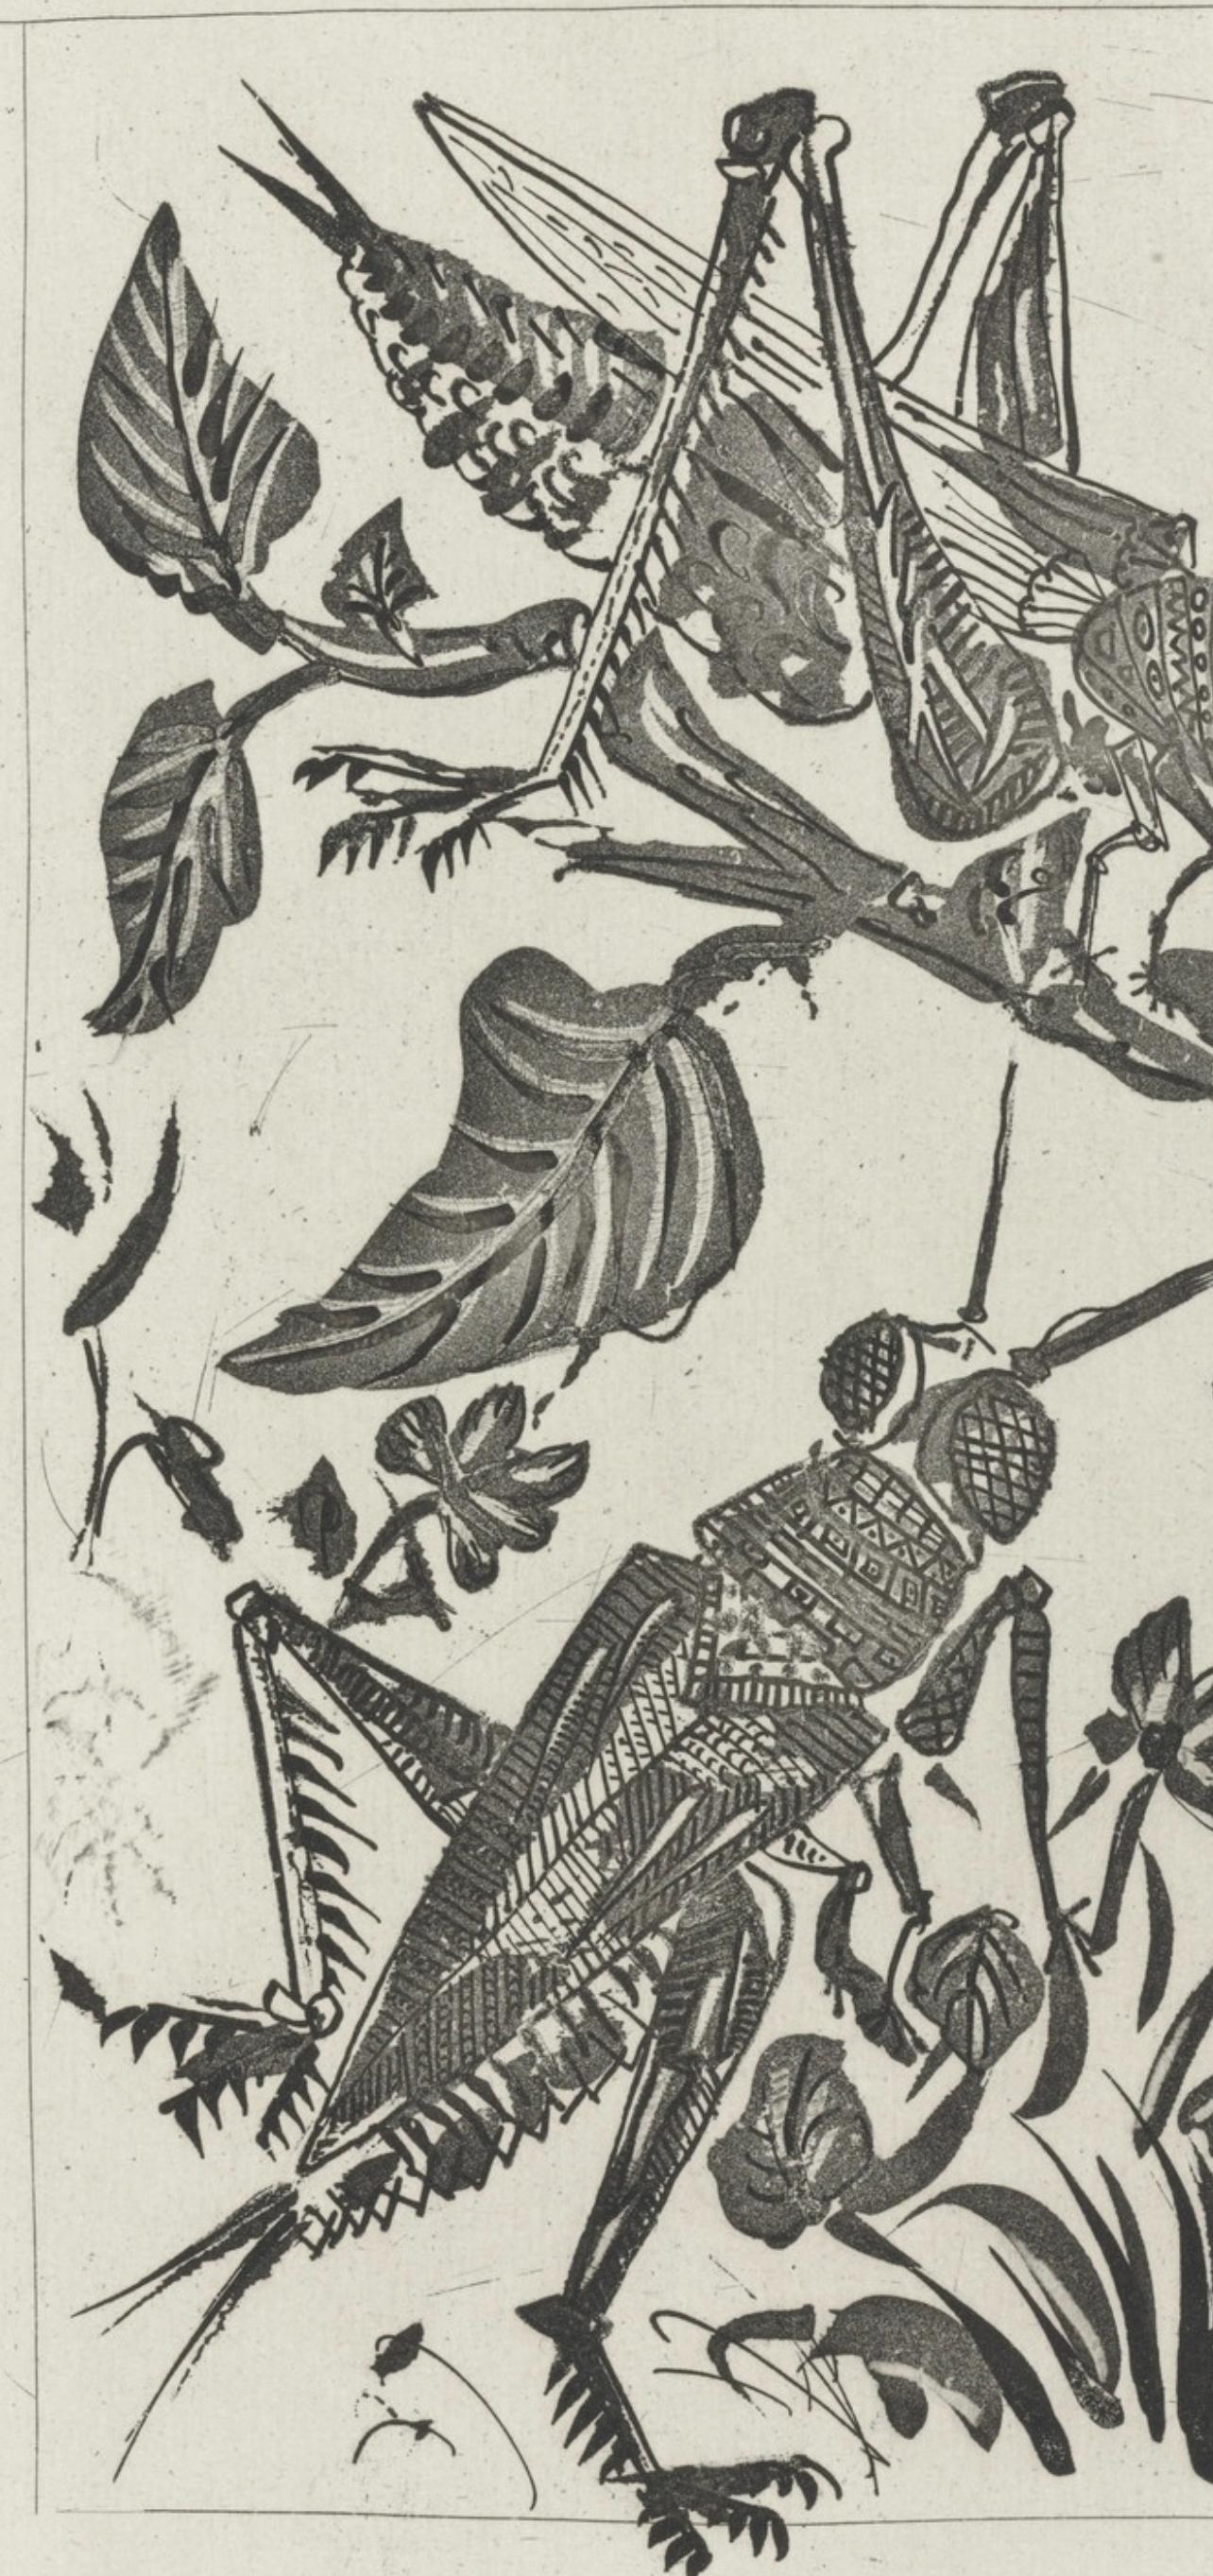 Picasso, La Sauterelle, Histoire naturelle (after) - Print by Pablo Picasso